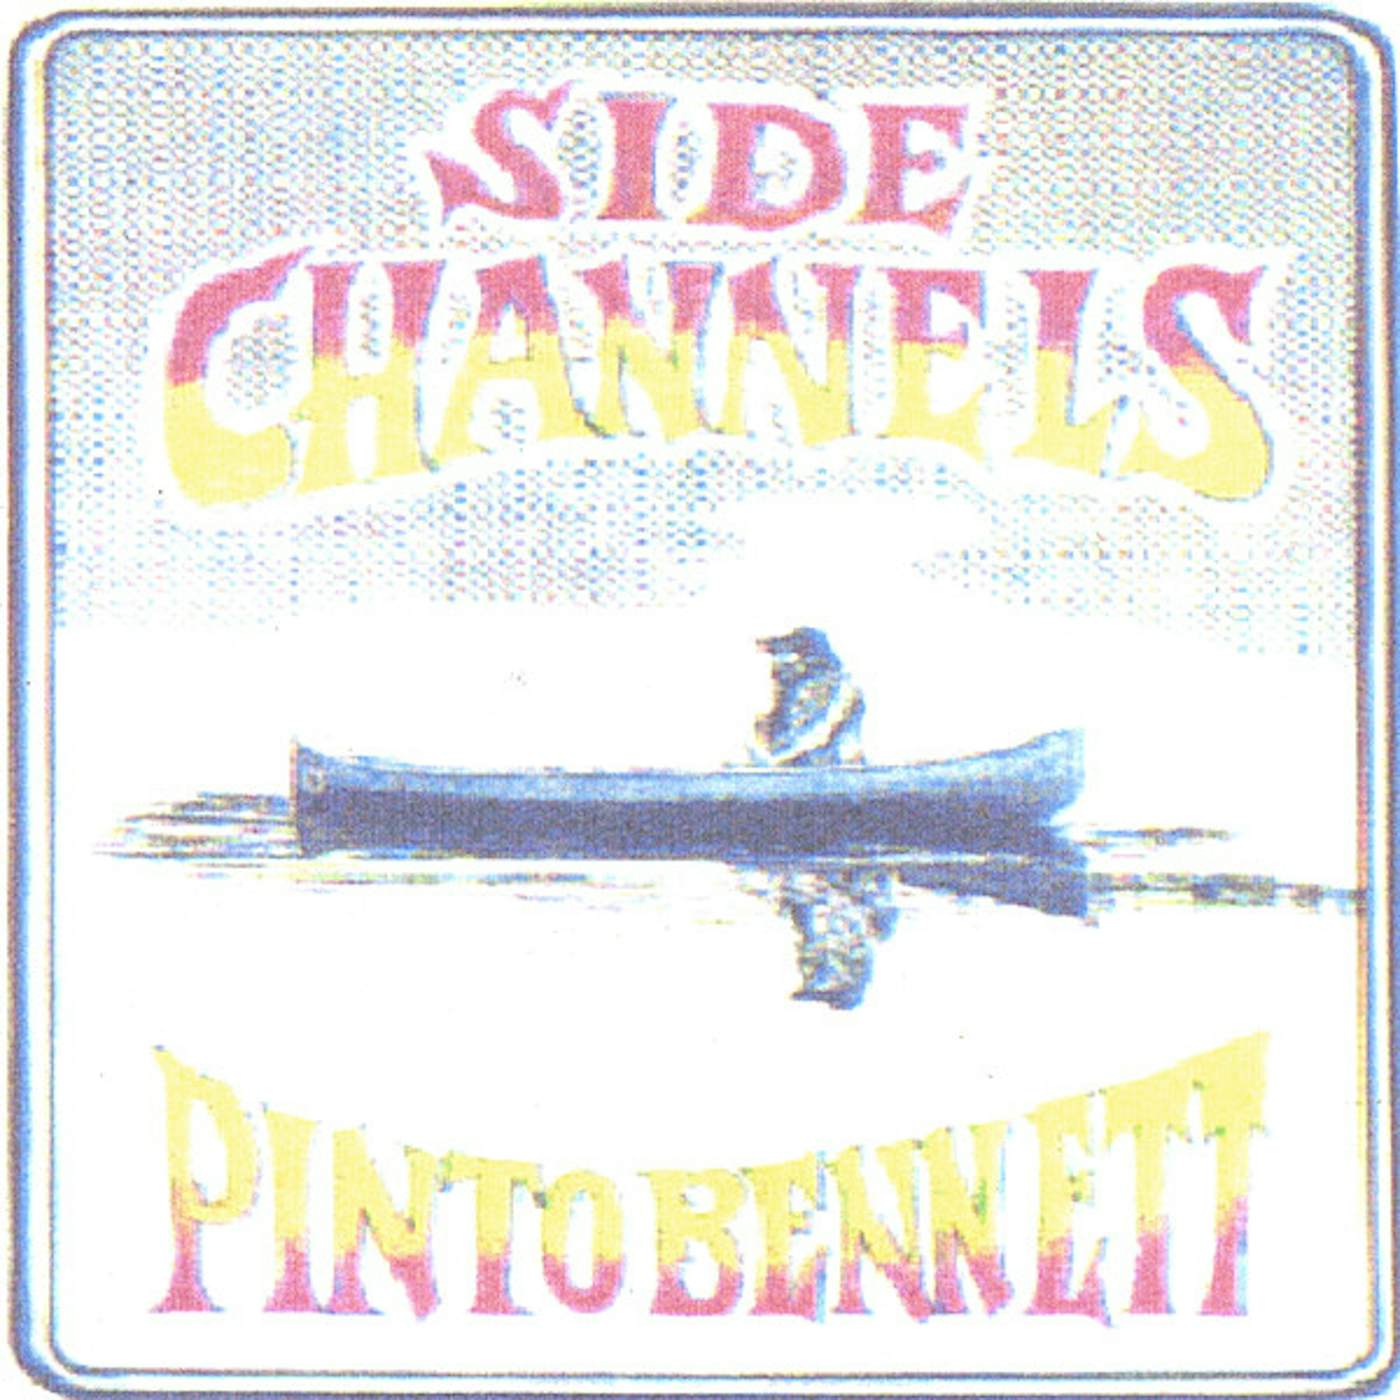 Pinto Bennett SIDE CHANNELS CD